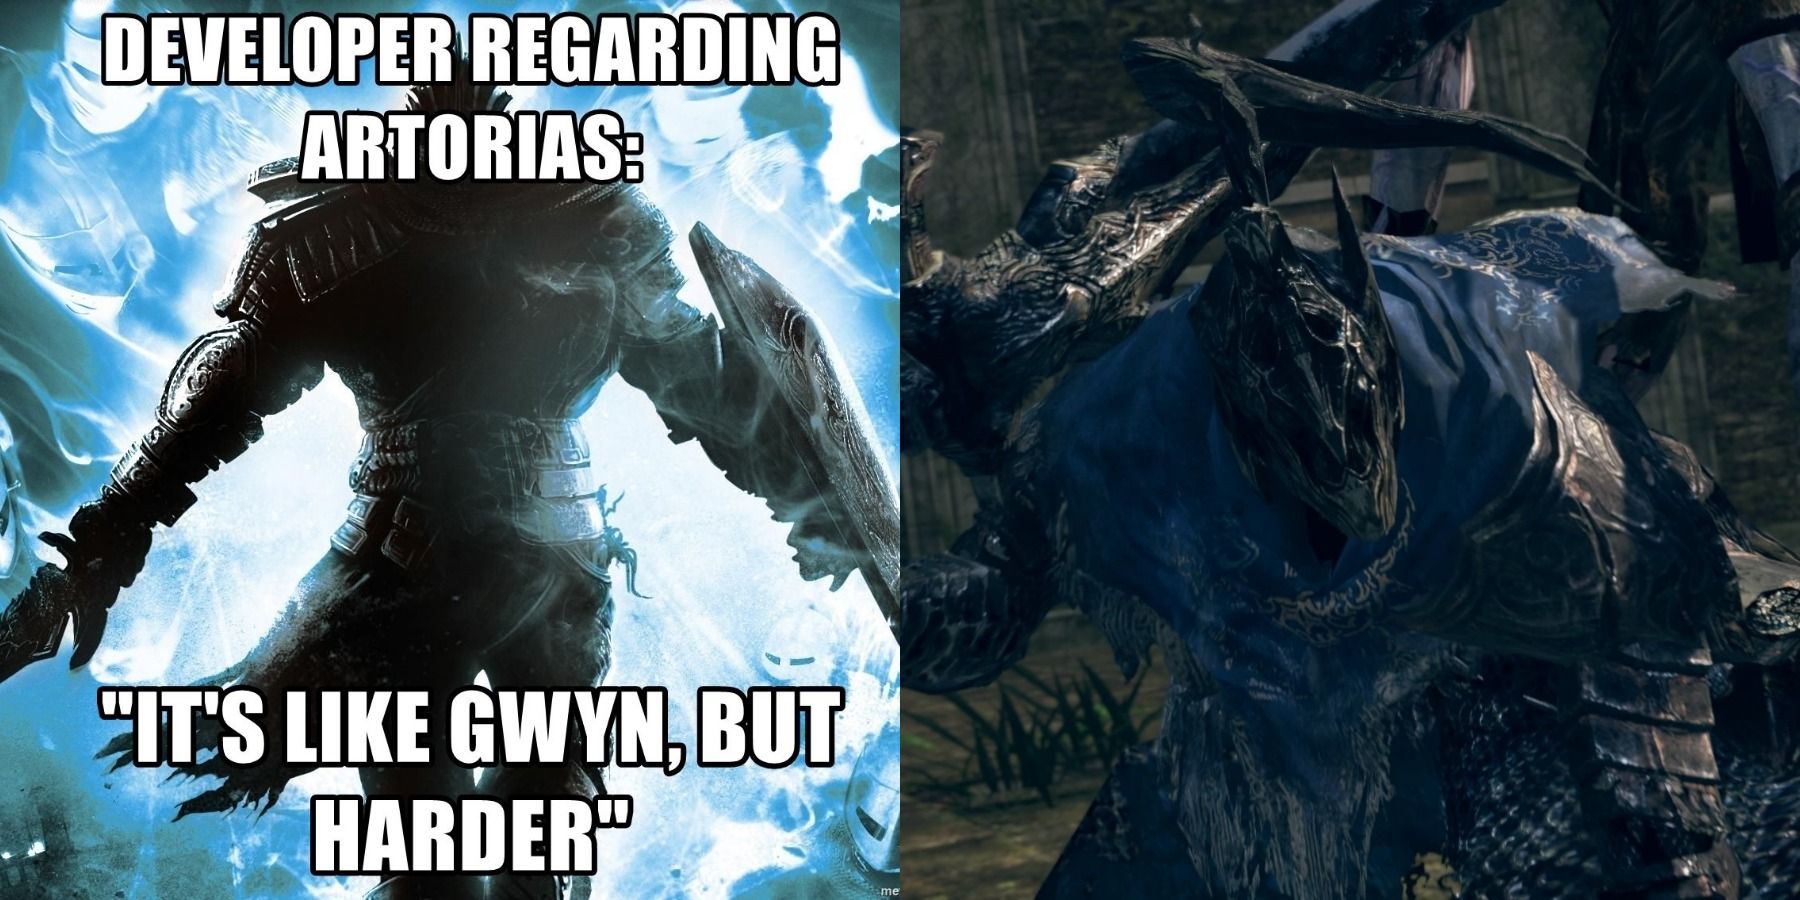 Dark Souls artorias harder gwyn boss meme